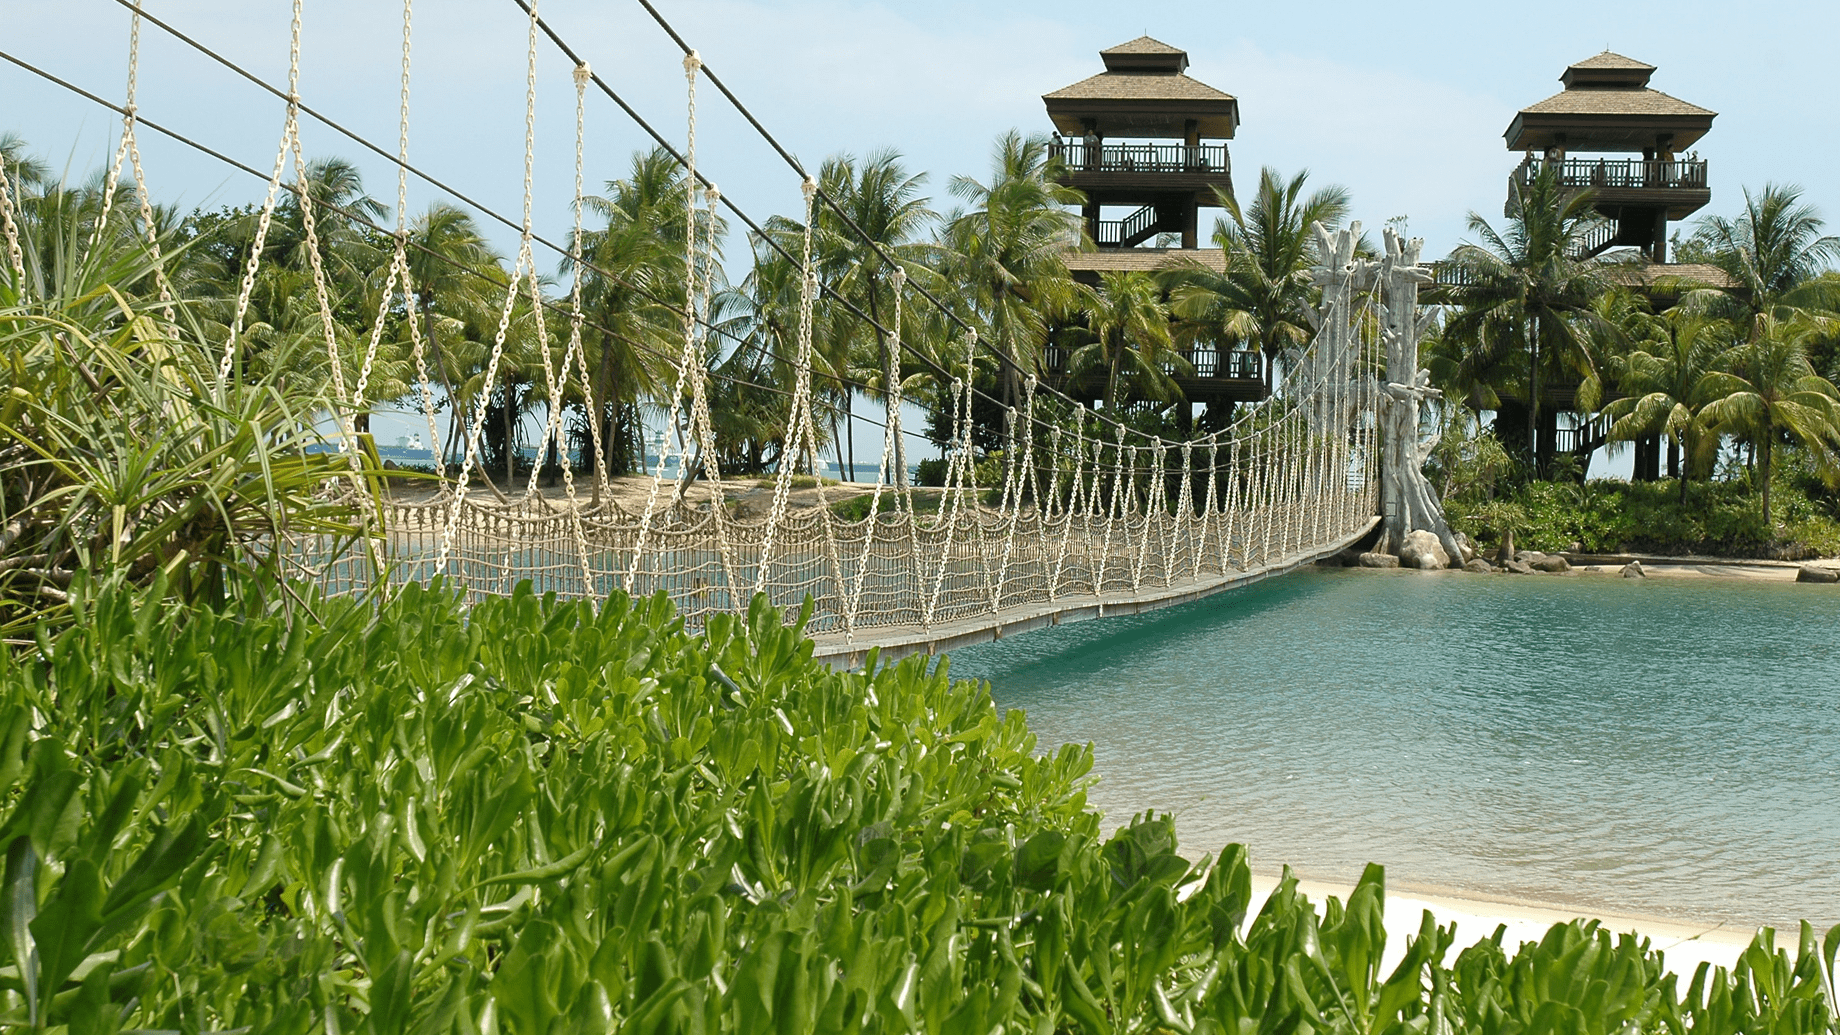 Palawan Beach - Bridge